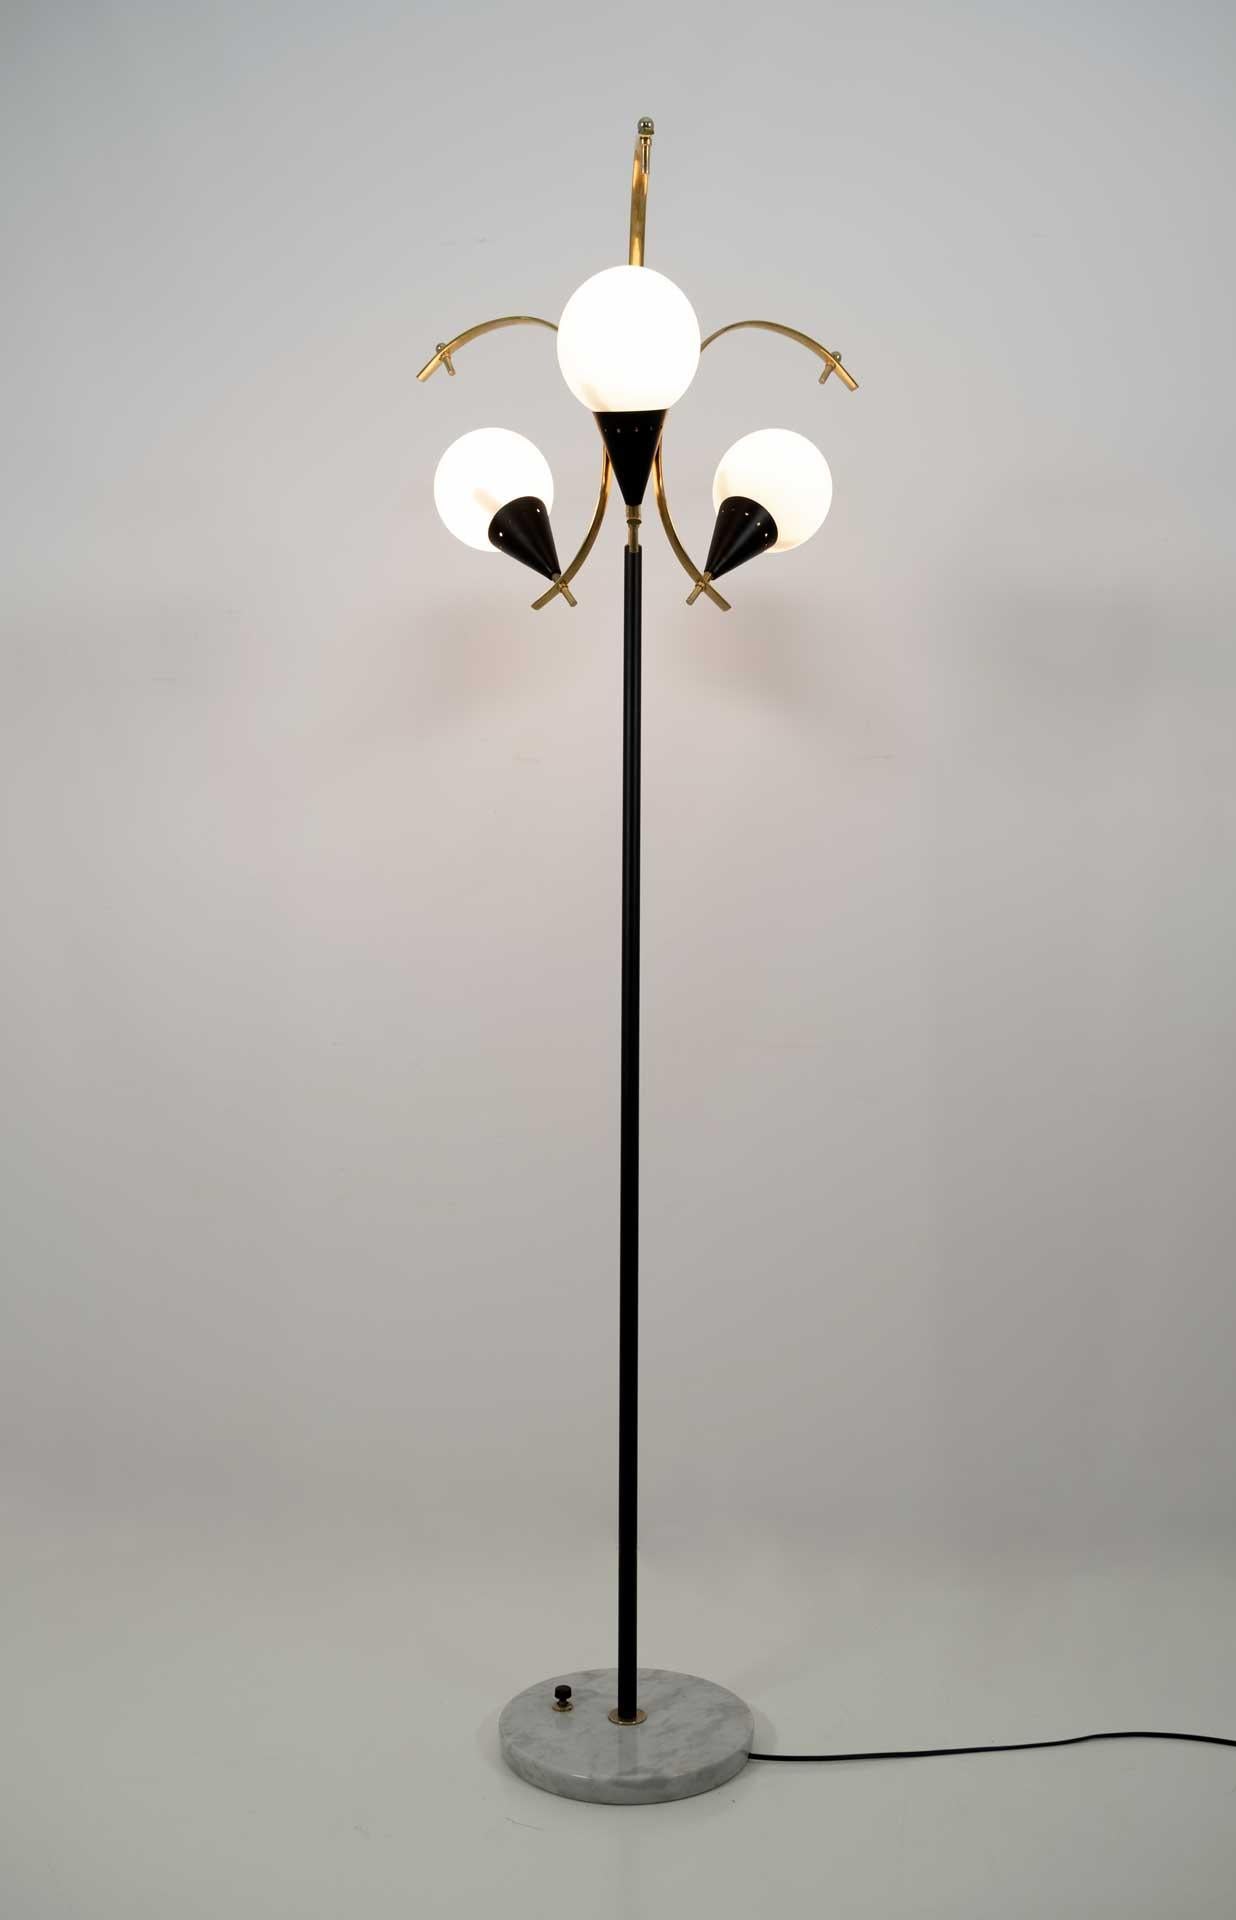 Stehleuchte aus poliertem Messing, schwarz lackiertem Metall, Opalglas und Marmorsockel. Produziert von Stilnovo in Italien in den 1950er Jahren.
Die Lampe wurde vollständig restauriert und poliert.